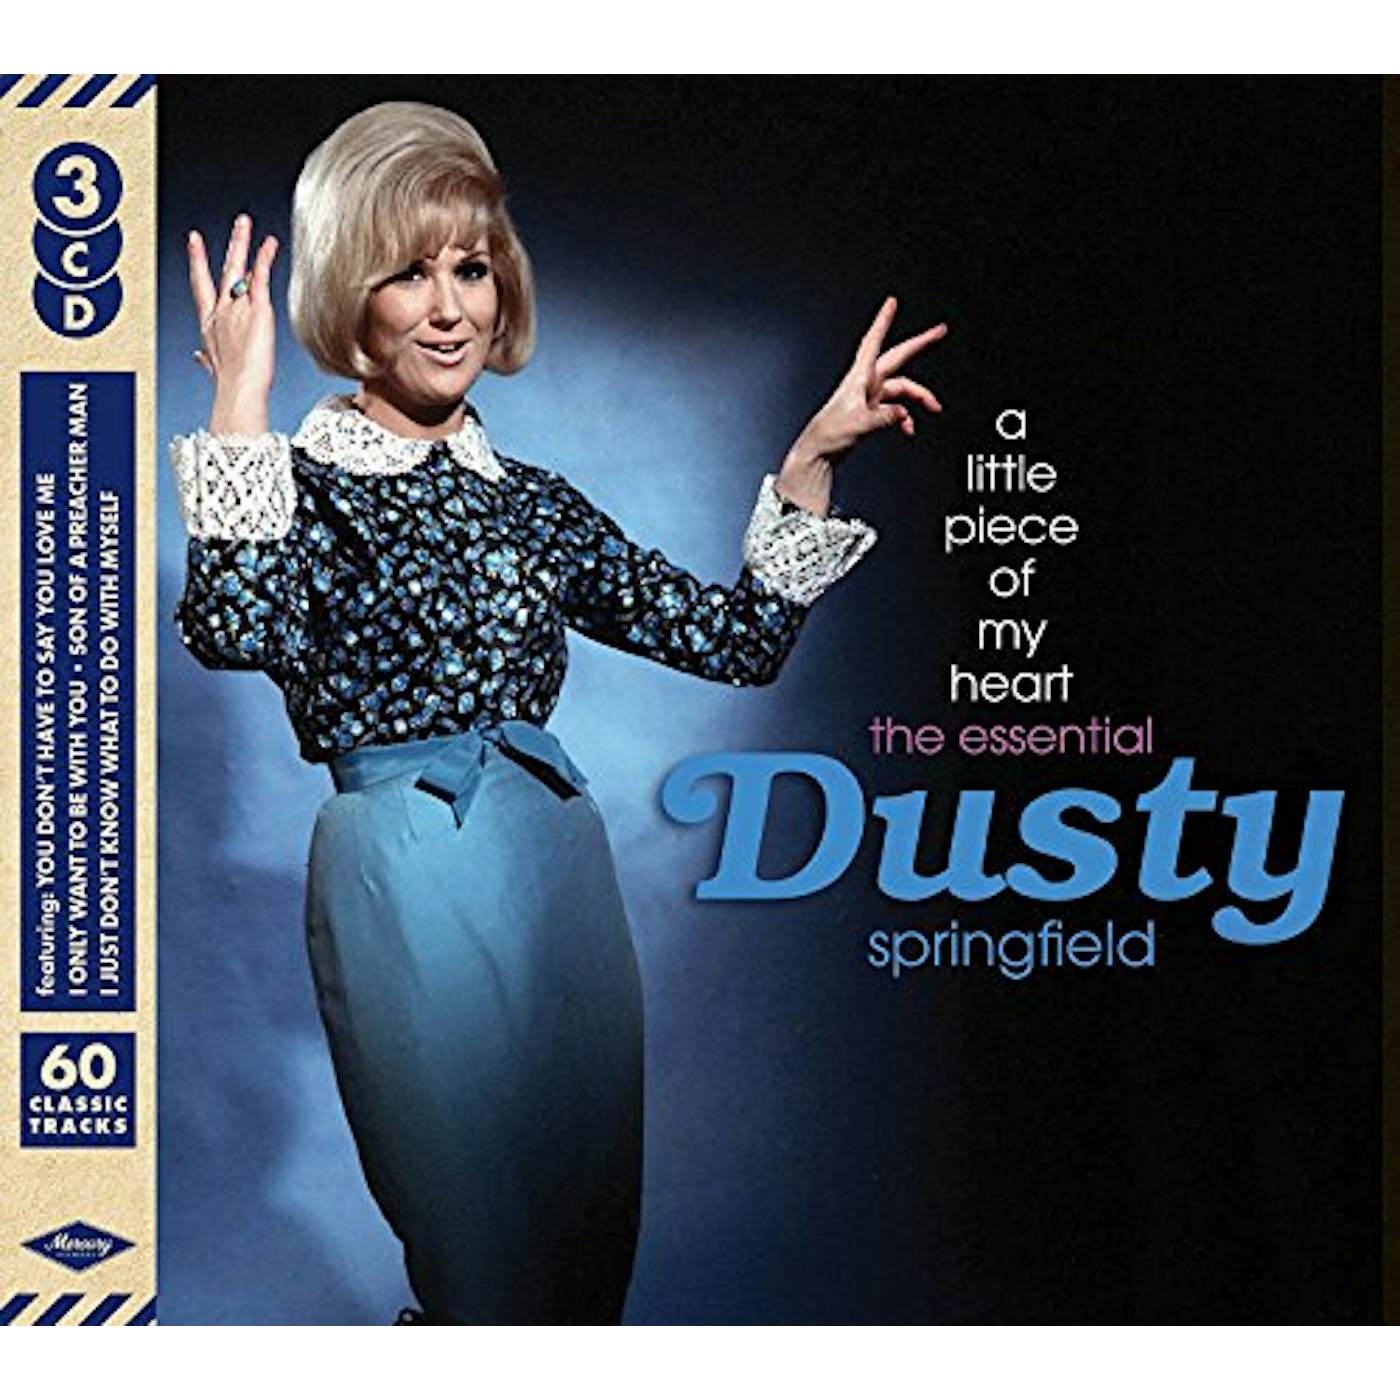 Dusty Springfield LITTLE PIECE OF MY HEART: ESSENTIAL DUSTY CD